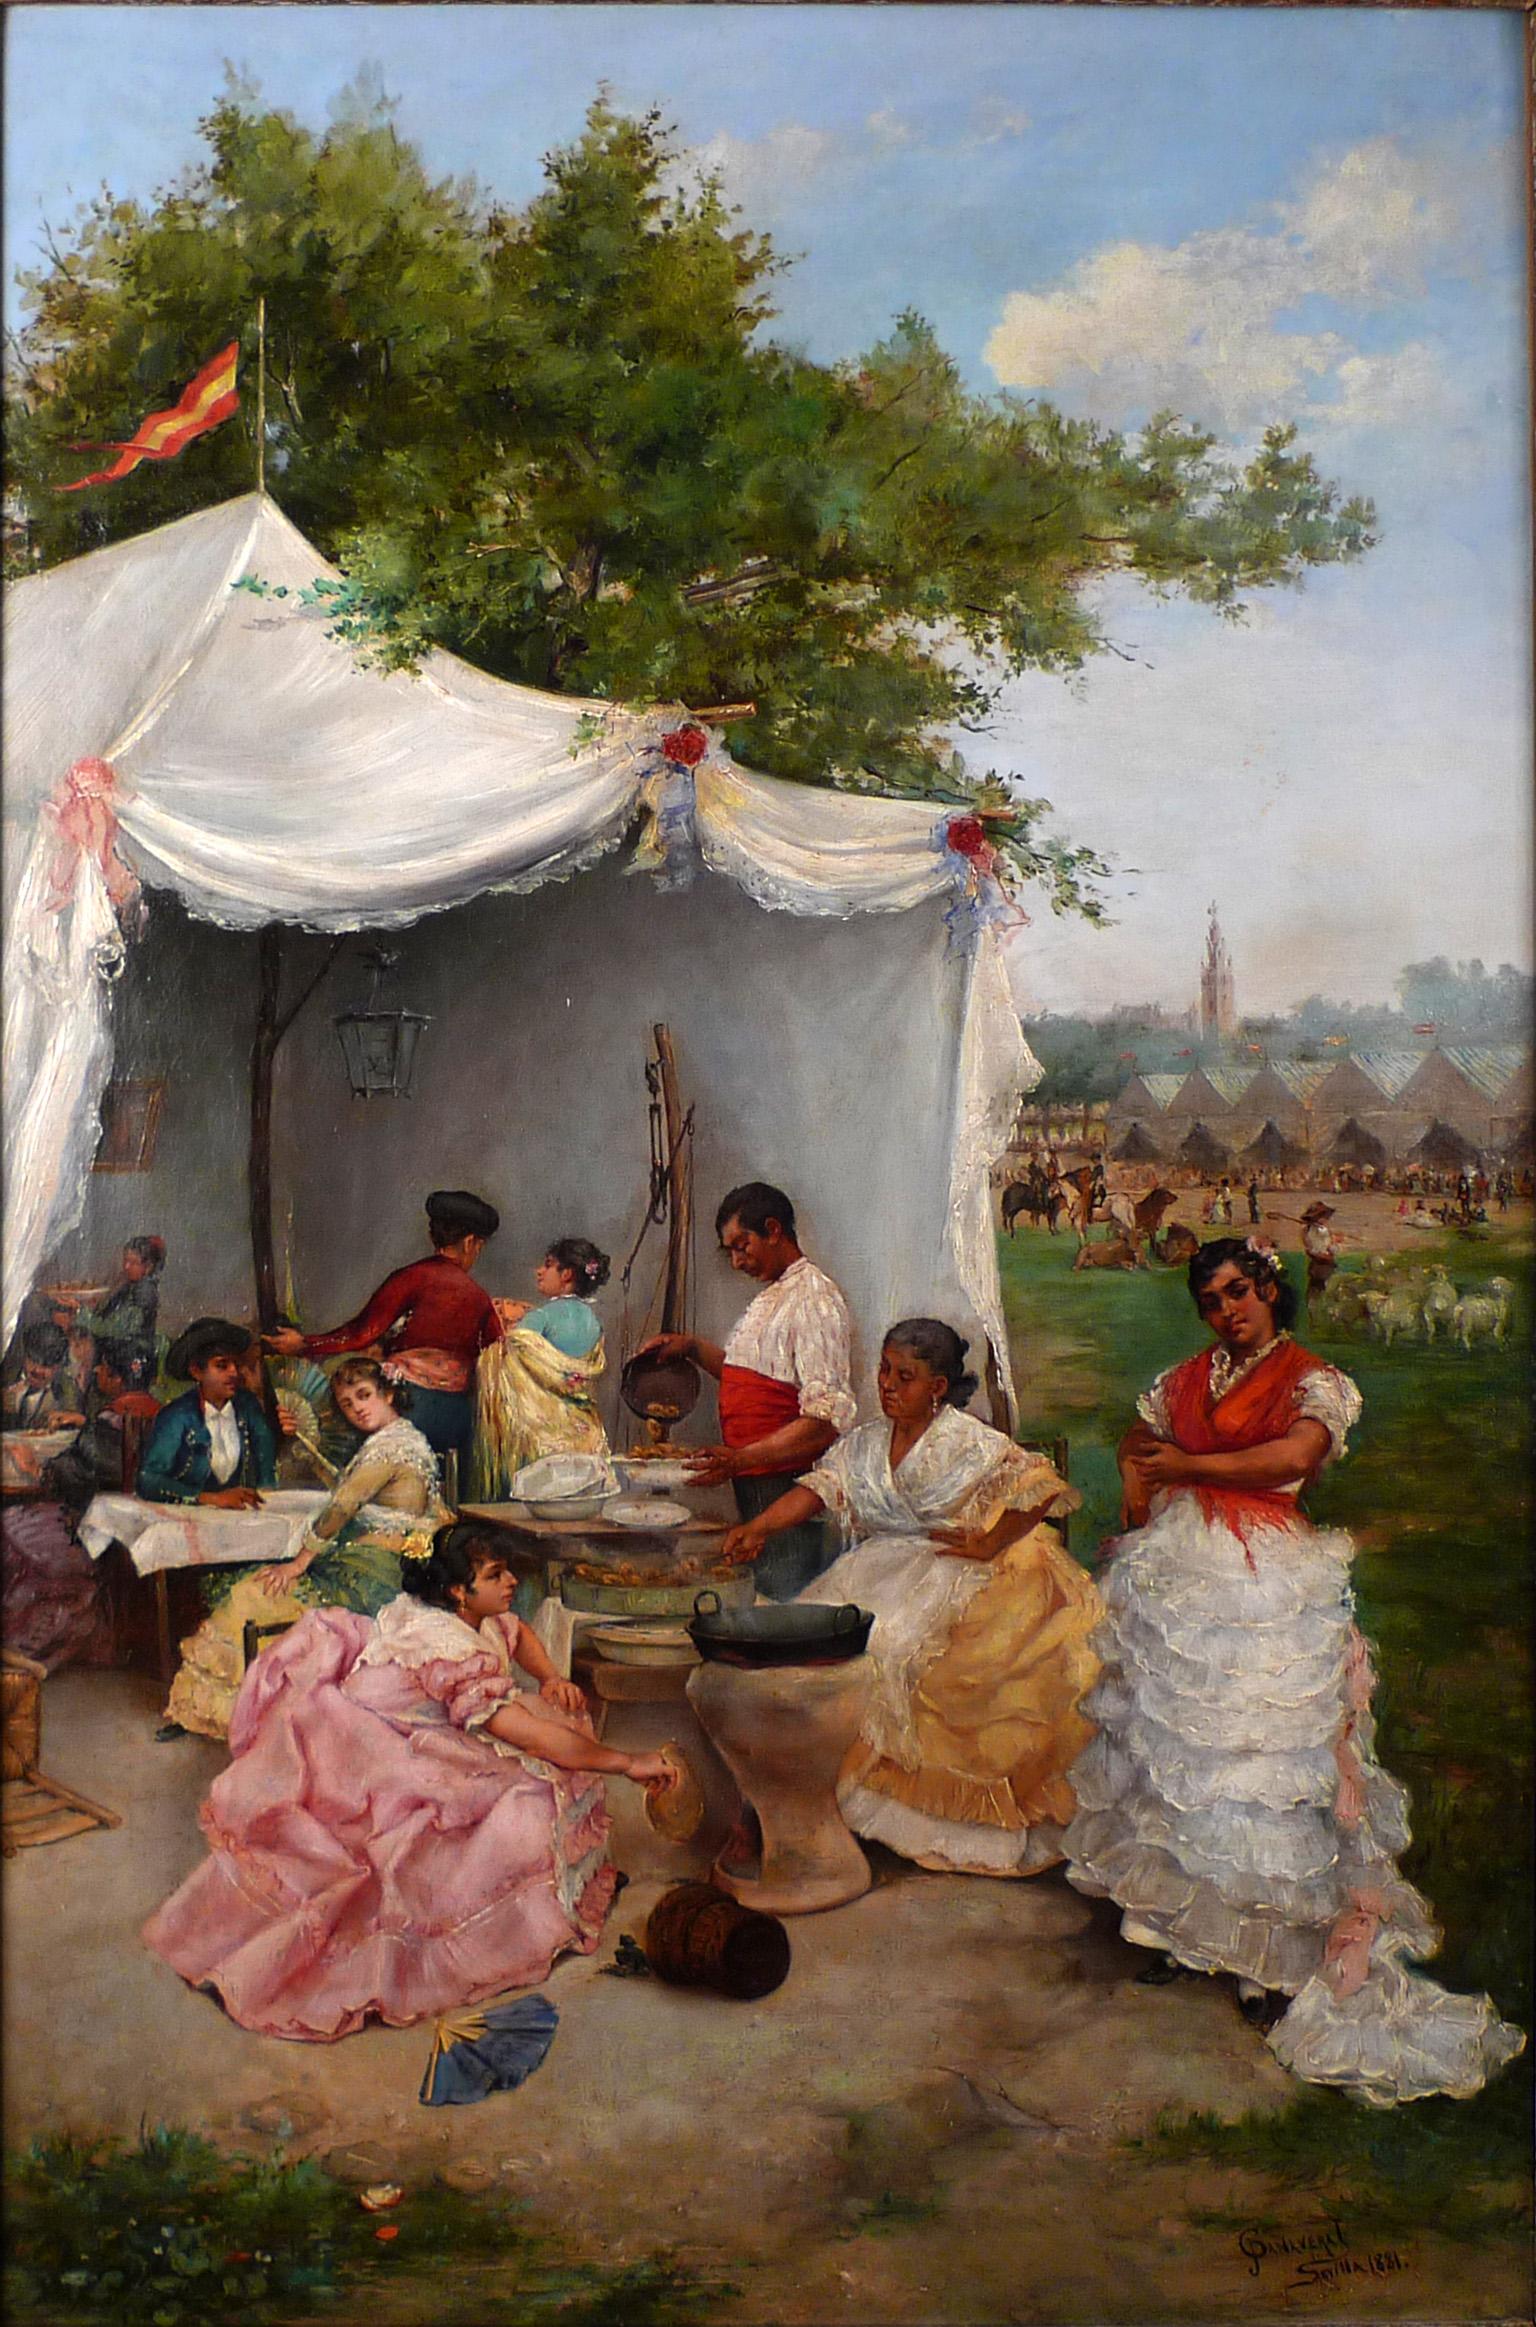 Feria de Sevilla - Painting by José Cañaveral